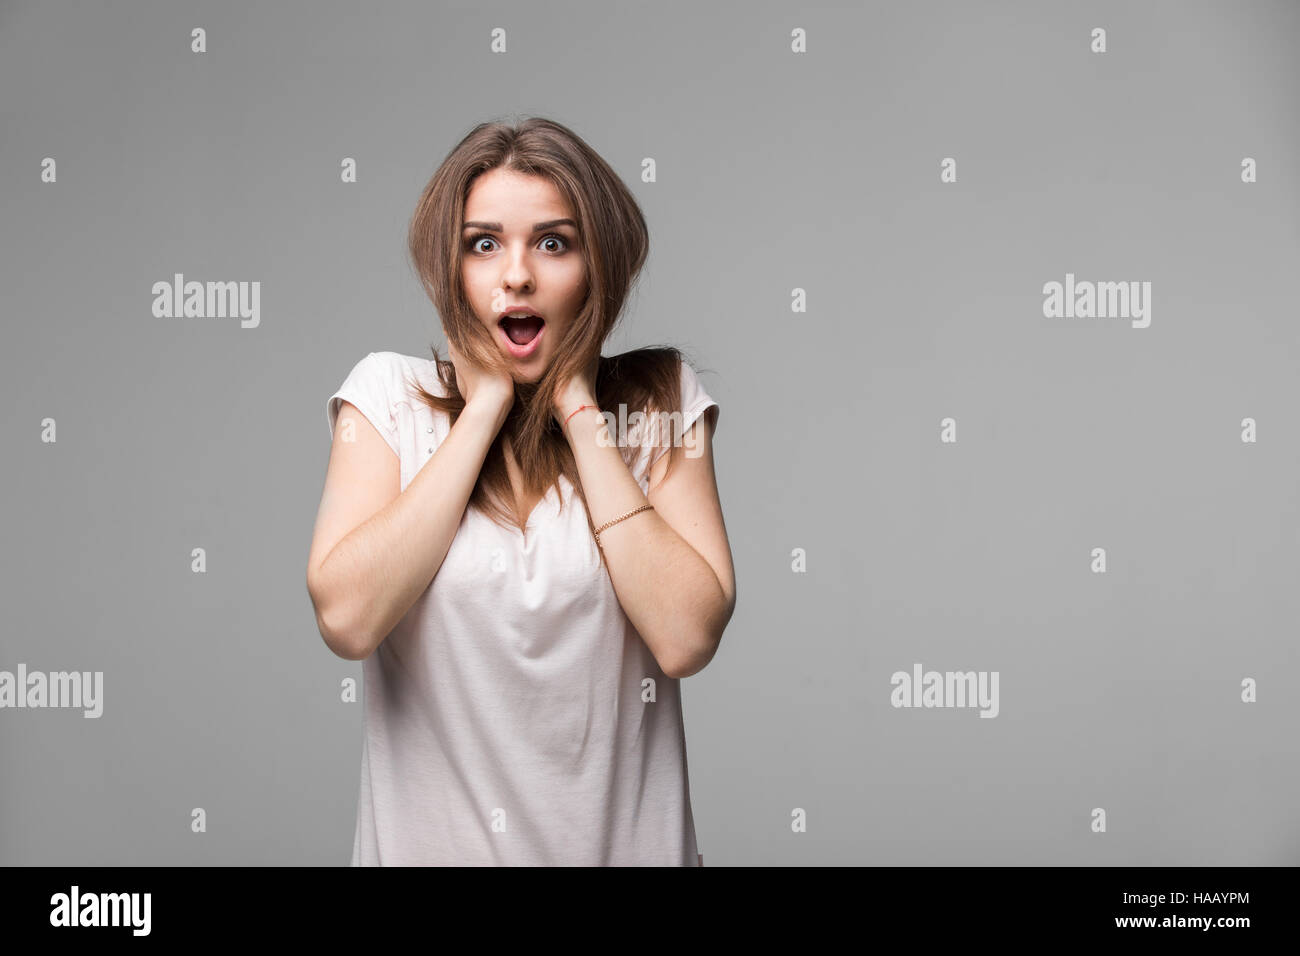 Ritratto di bella bruna donna con un espressione stupita in posa di studio su sfondo grigio Foto Stock